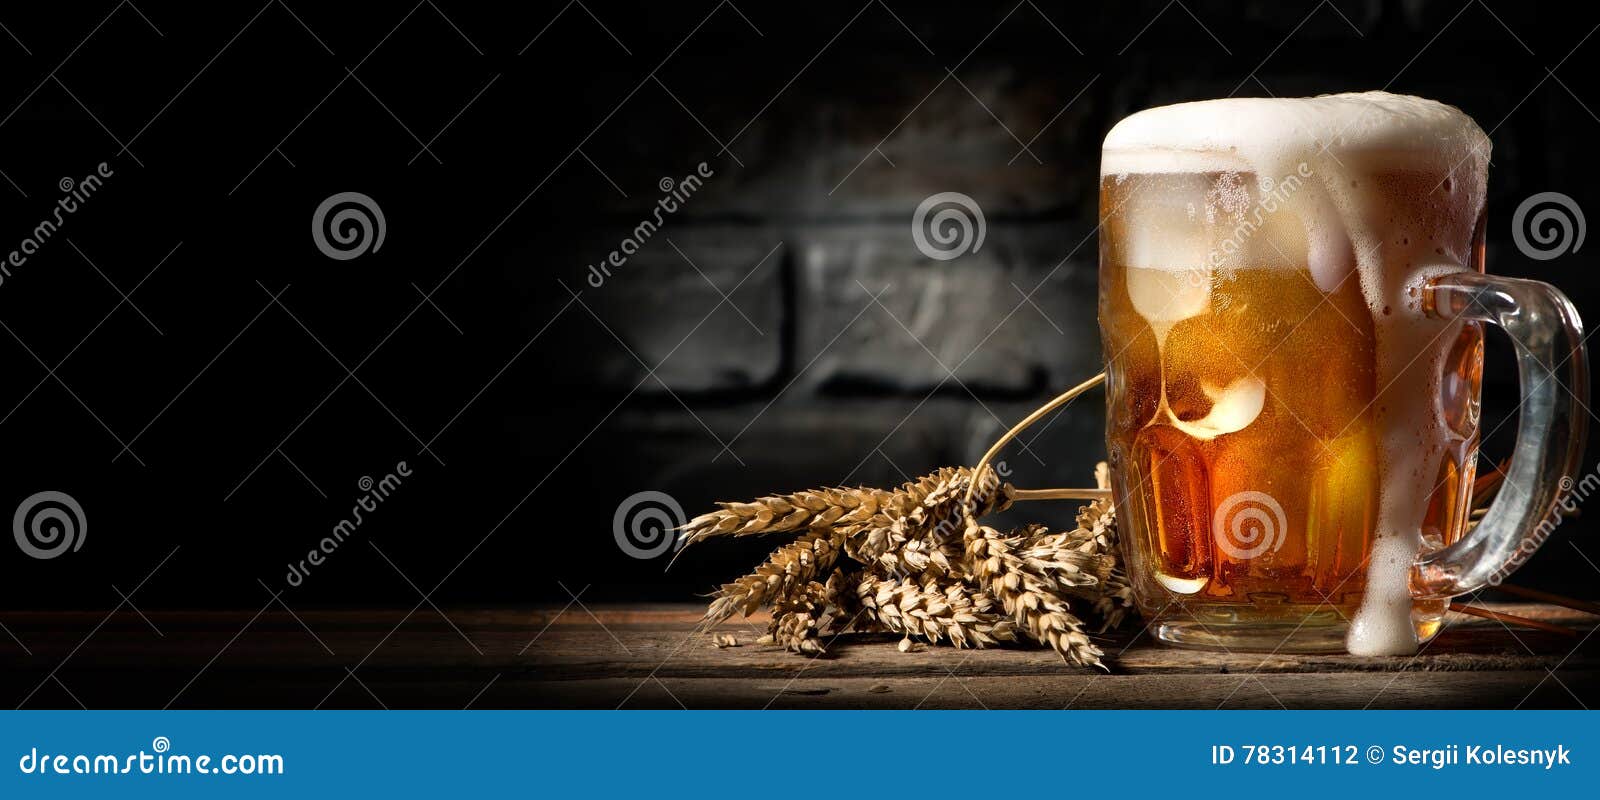 beer in mug on table